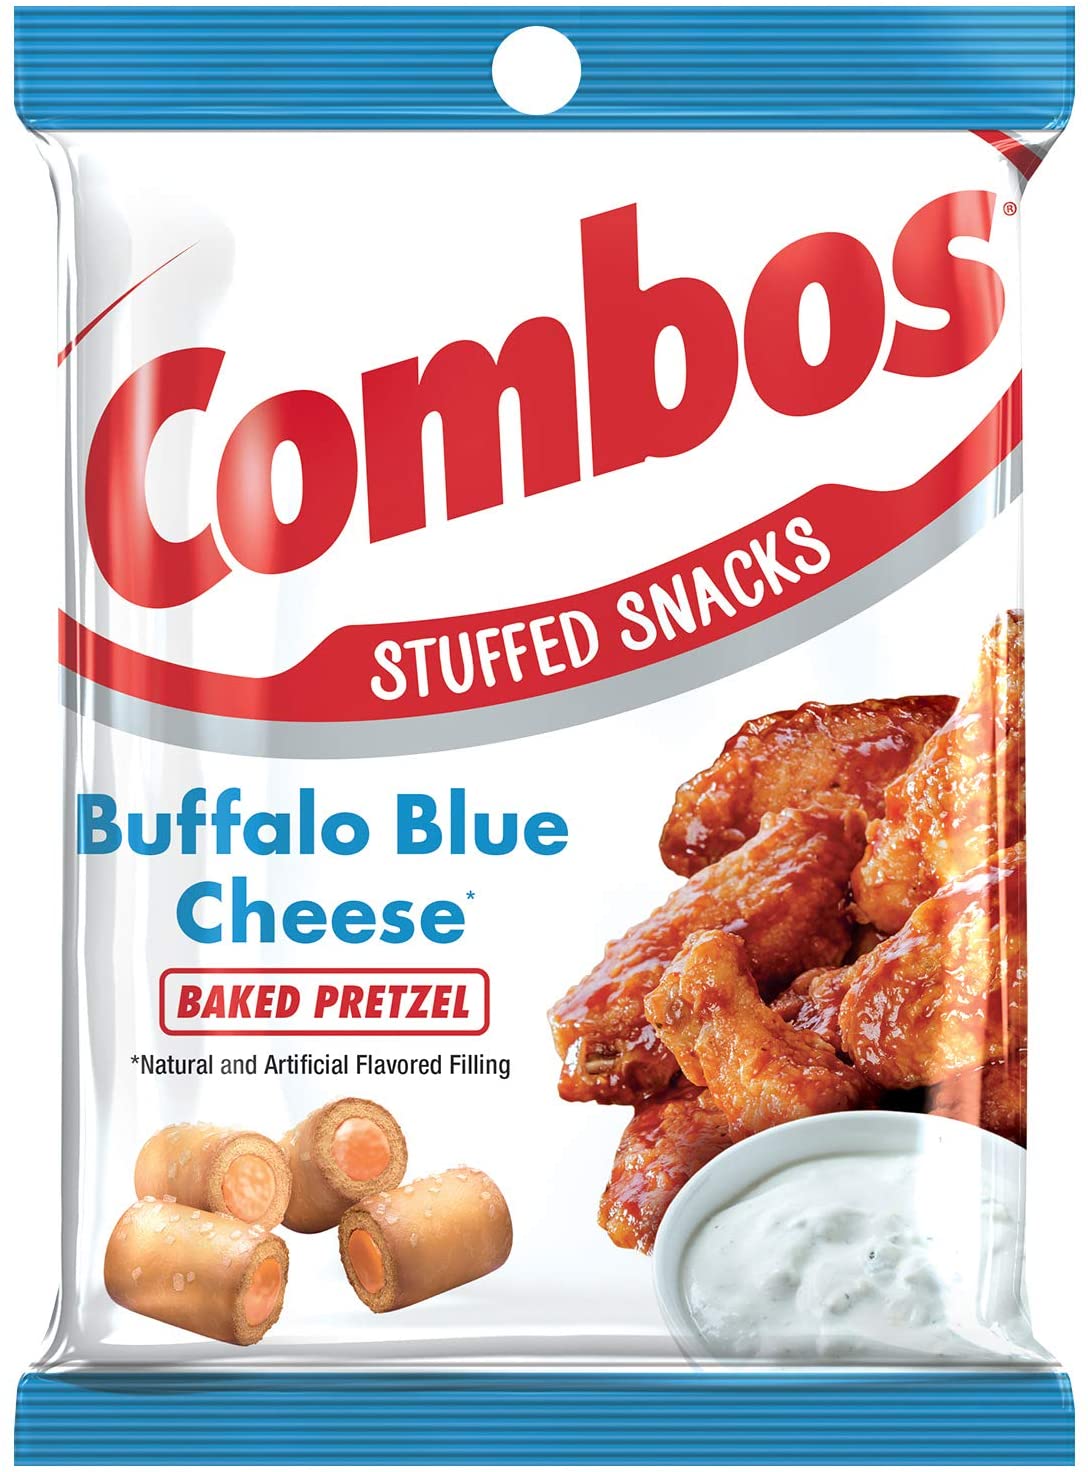 Combos Buffalo Blue Cheese 6.3oz